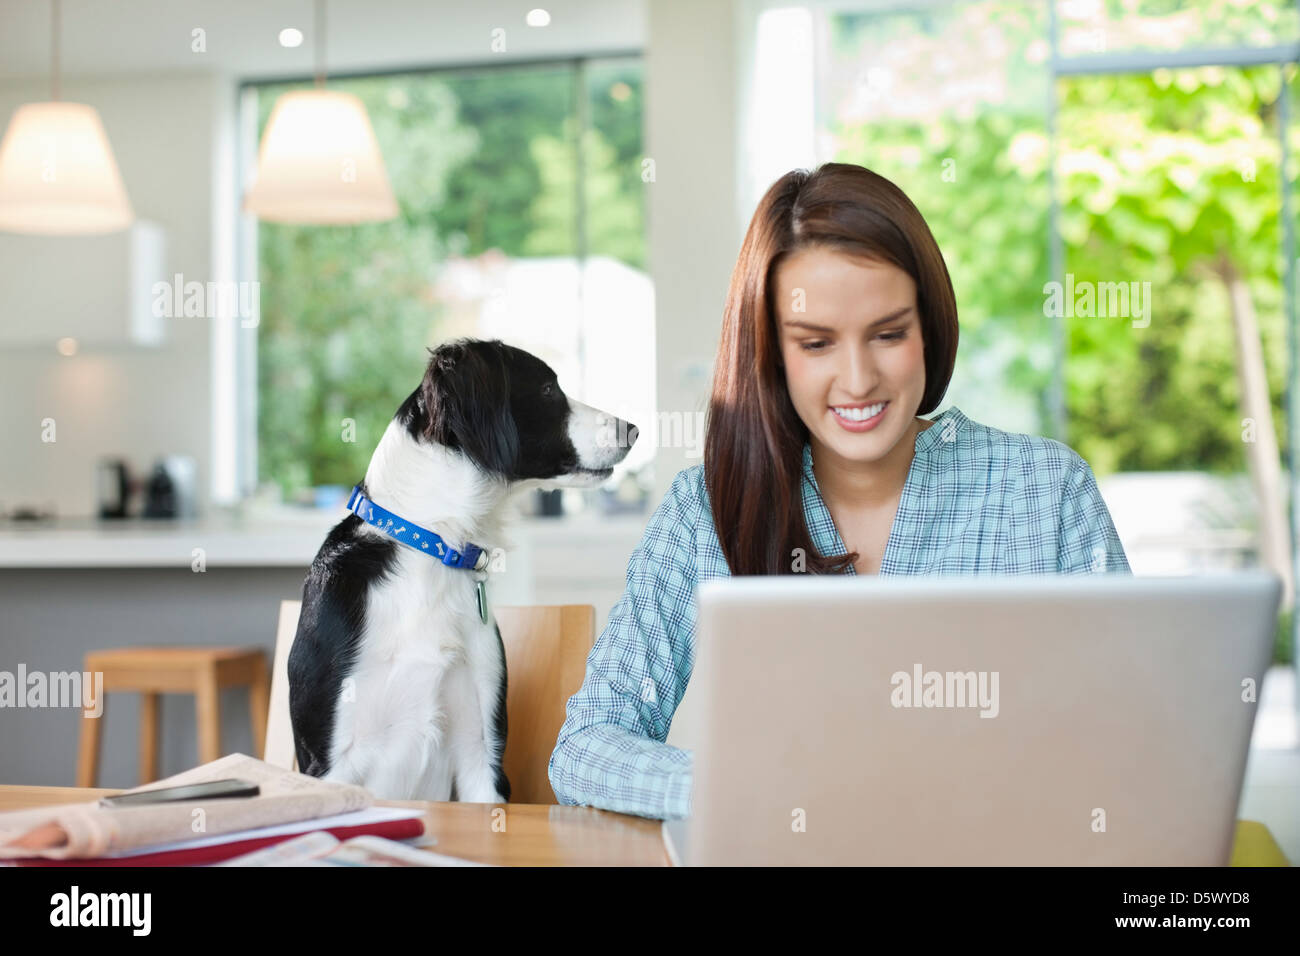 Dog watching woman use laptop Stock Photo